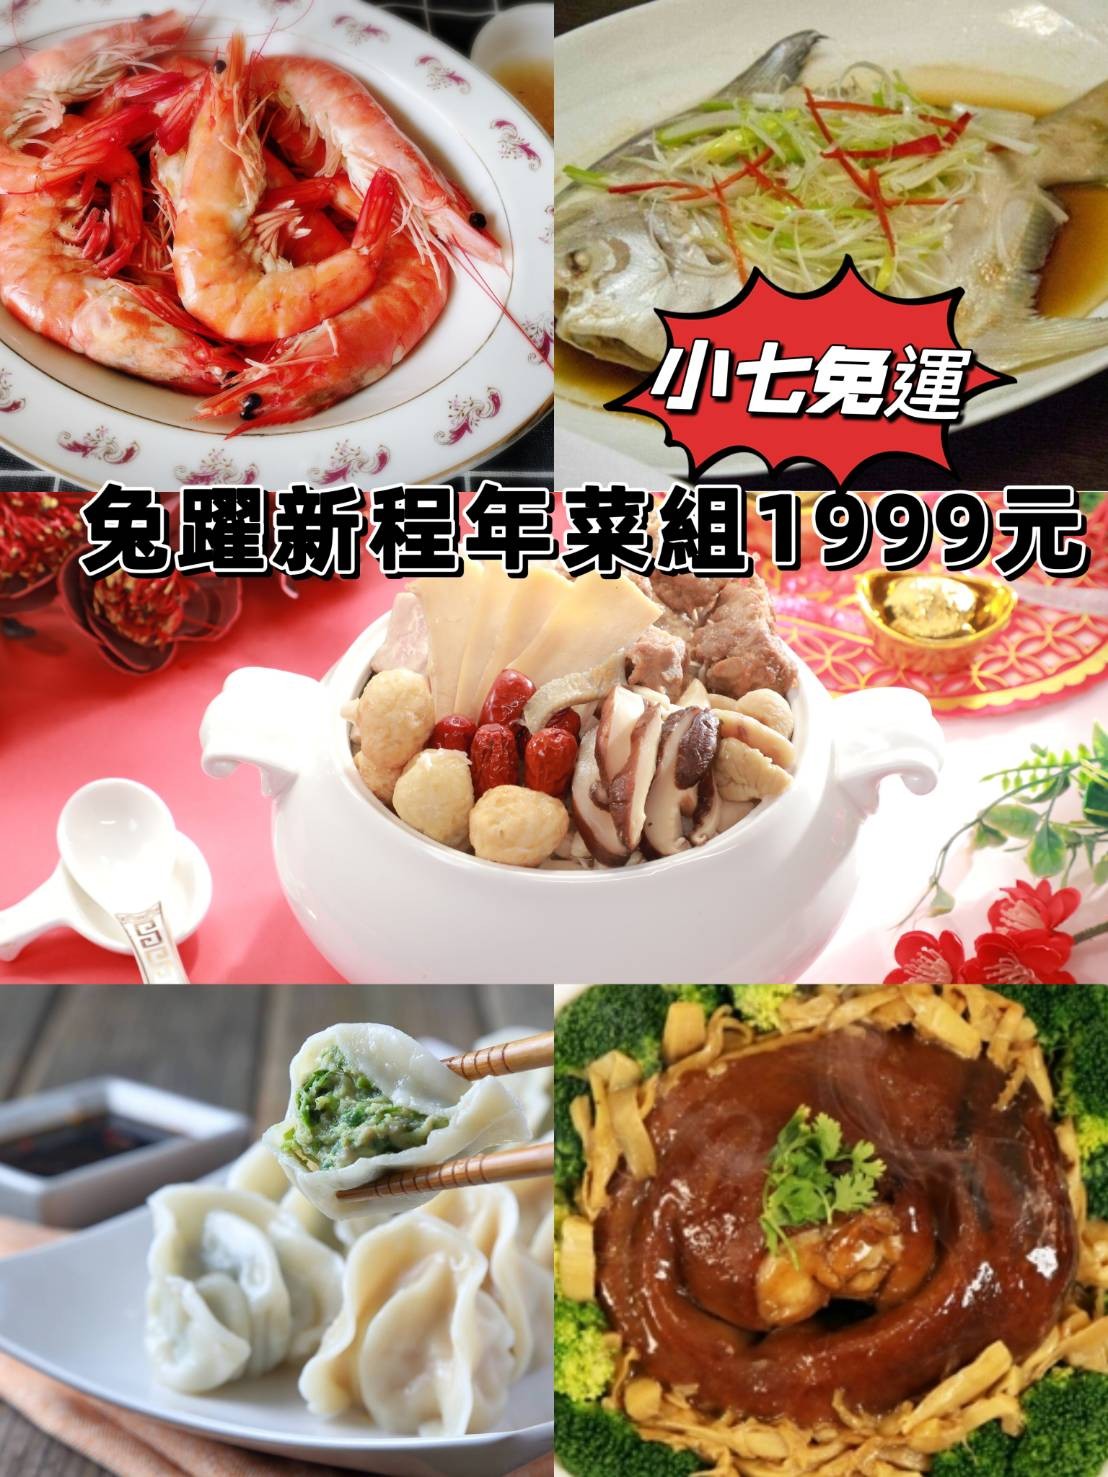 限量!!限量!!【小七免運】勞記食堂-兔曜新程年菜組 1999 元